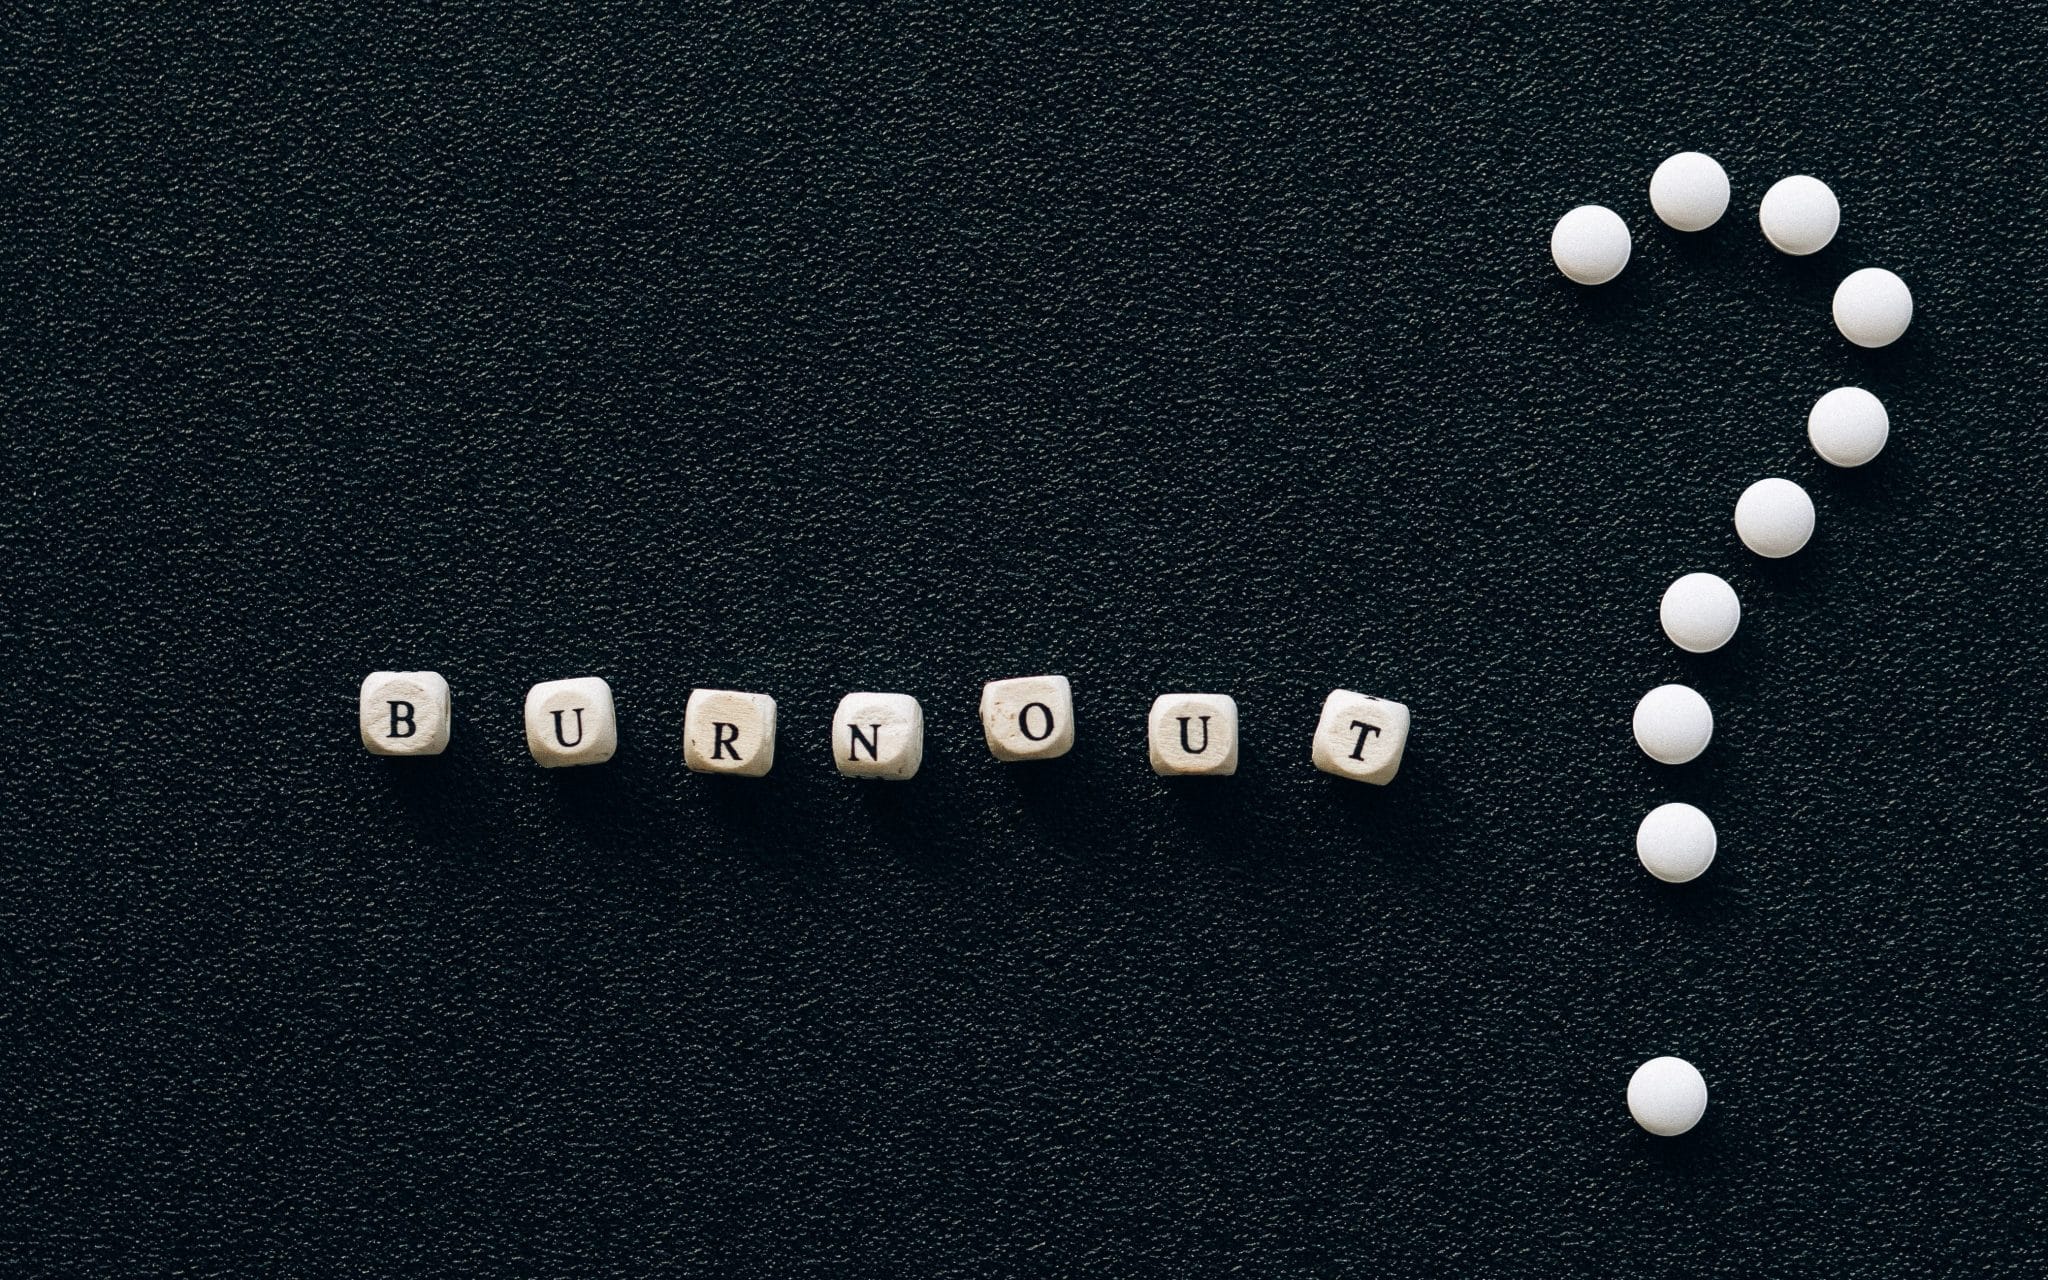 Dados com as letras da palavra BURNOUT. Ao lado direito, pequenas esferas que formam um ponto de interrogação.